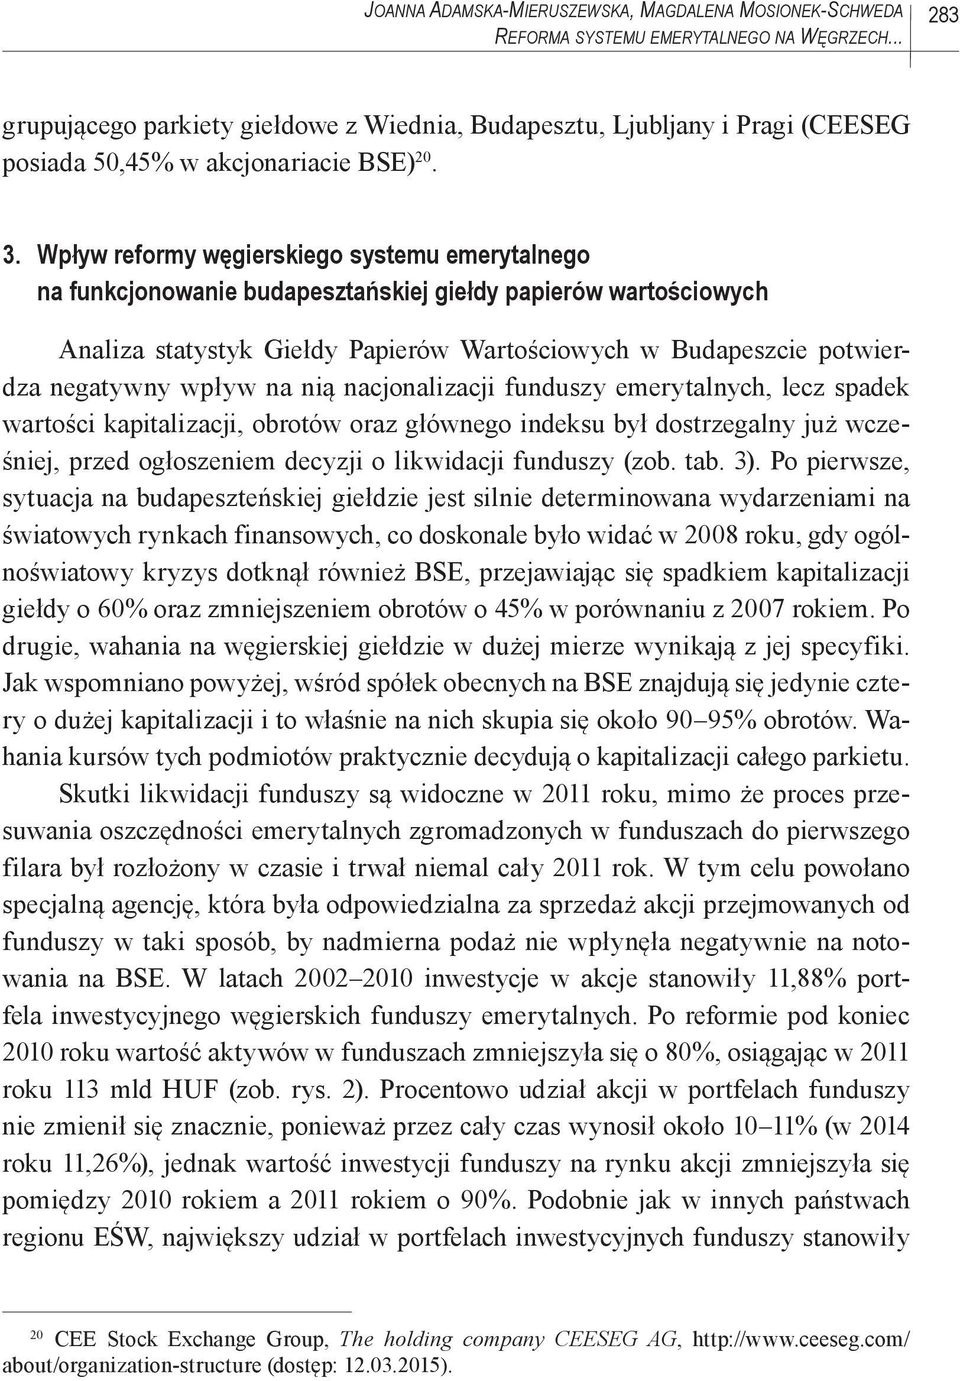 Wpływ reformy węgierskiego systemu emerytalnego na funkcjonowanie budapesztańskiej giełdy papierów wartościowych Analiza statystyk Giełdy Papierów Wartościowych w Budapeszcie potwierdza negatywny